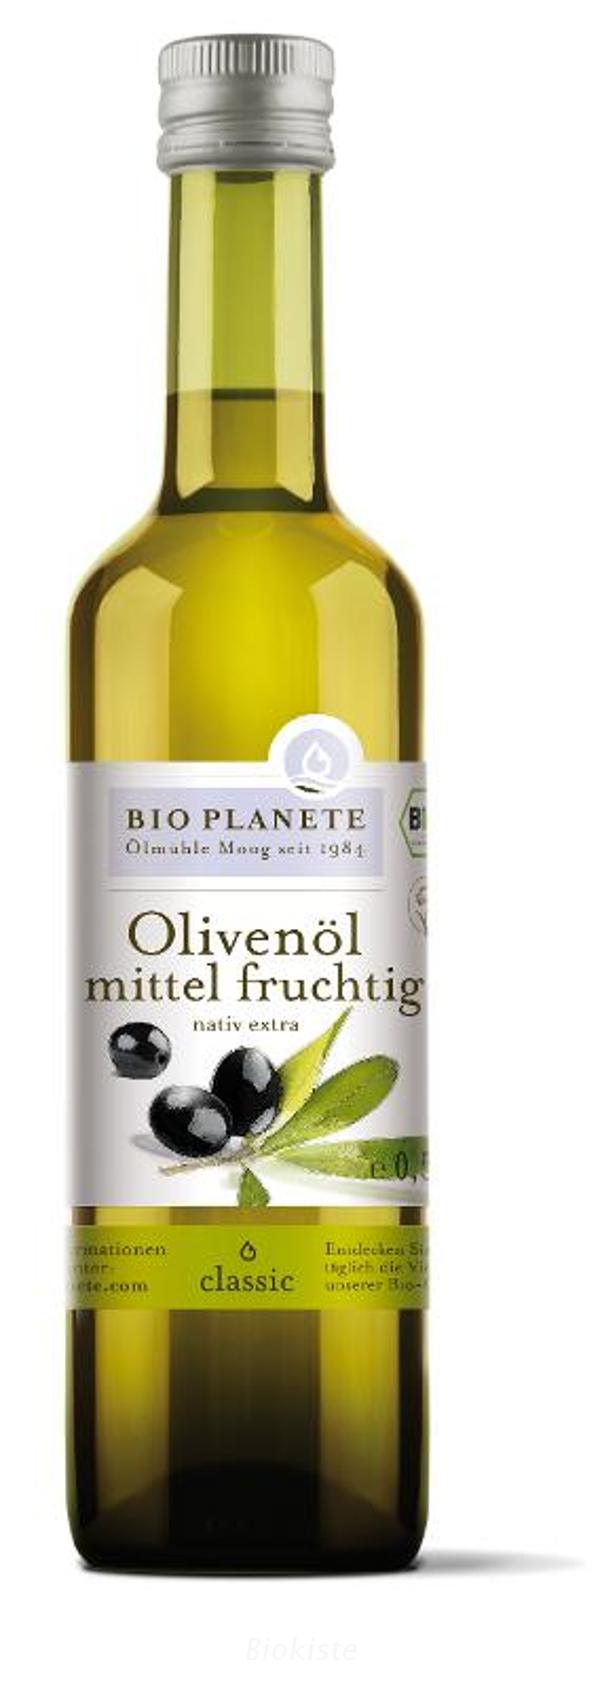 Produktfoto zu Olivenöl mittel-fruchtig 0,5l